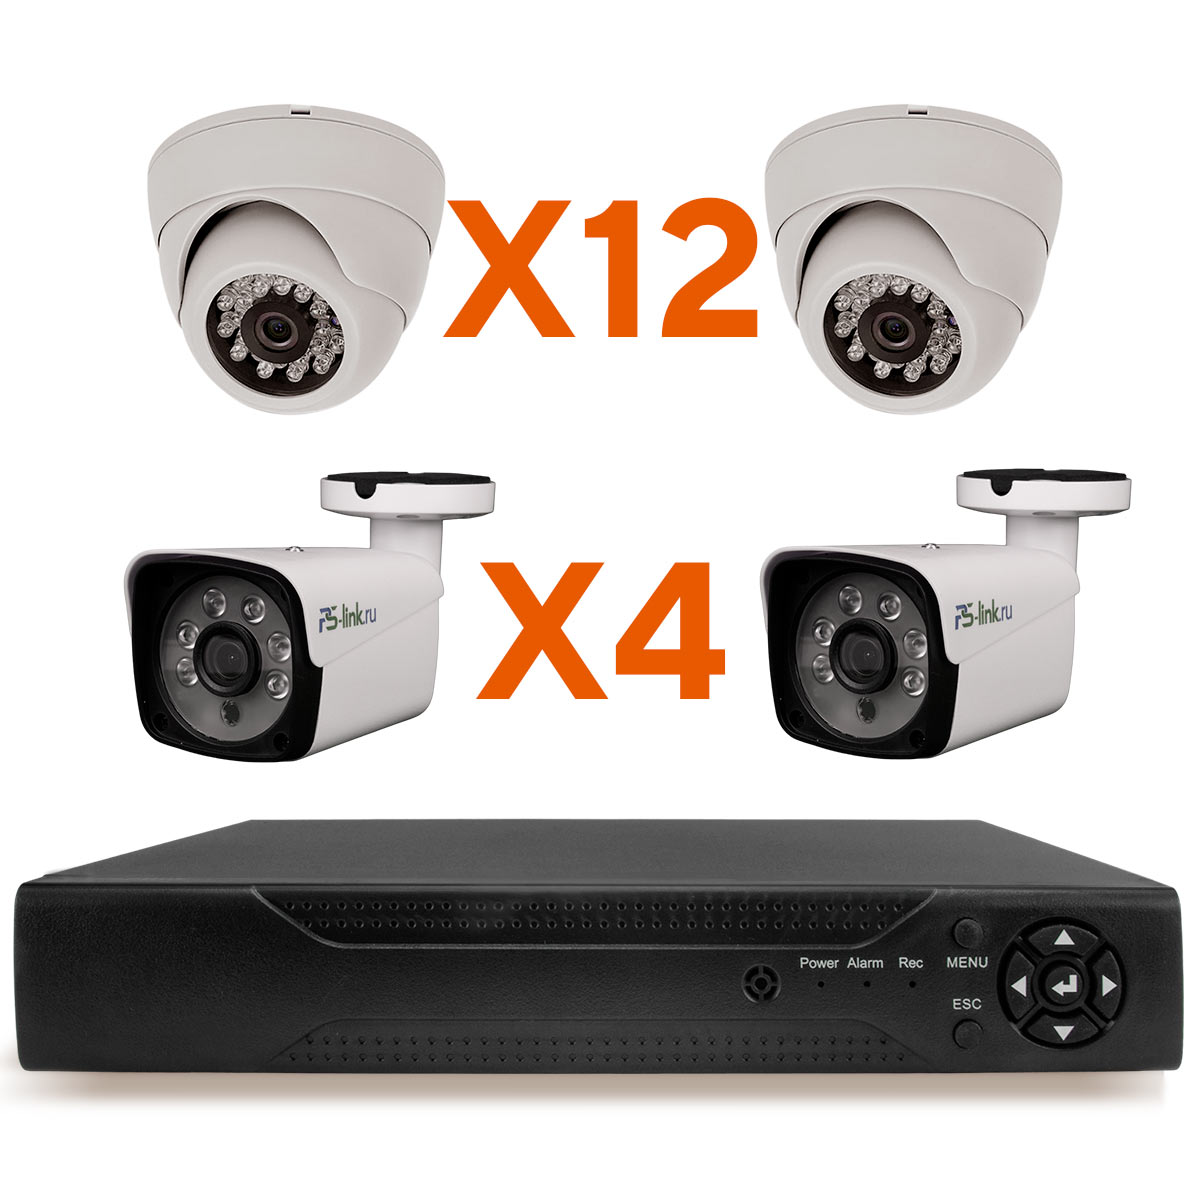 Комплект видеонаблюдения AHD Ps-Link KIT-B2124HD 16 камер 2Мп внутренние и уличные комплект видеонаблюдения ahd ps link kit b208hd 8 камер 2мп внутренние и уличные